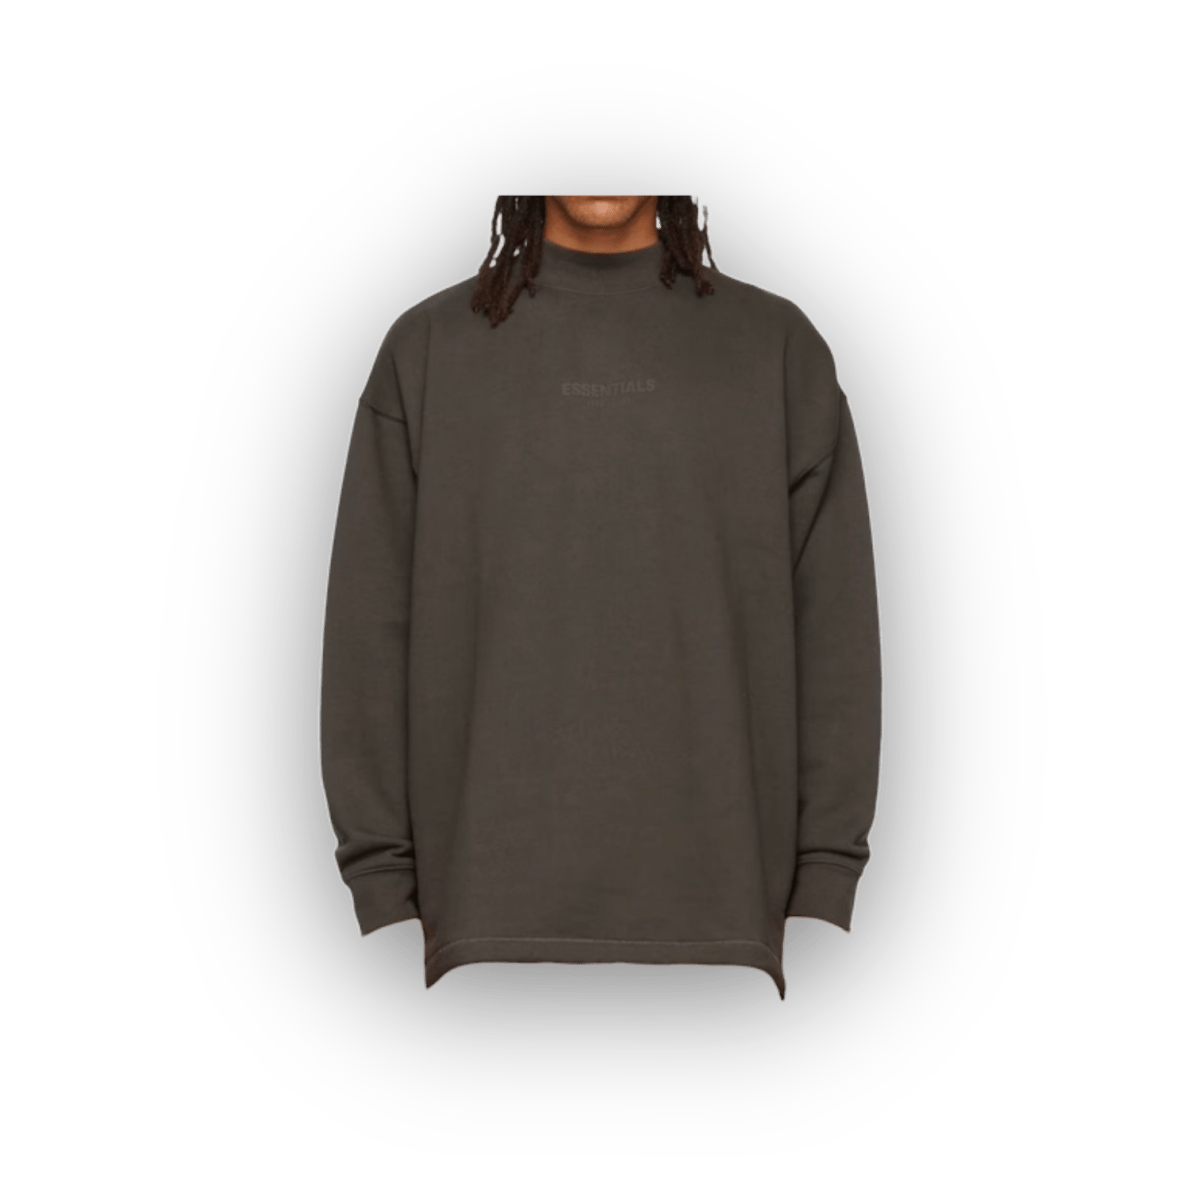 Essentials Fear of God Mock Neck Dark Grey Sweatshirt - Sweatshirt - Jawns on Fire Sneakers & Streetwear